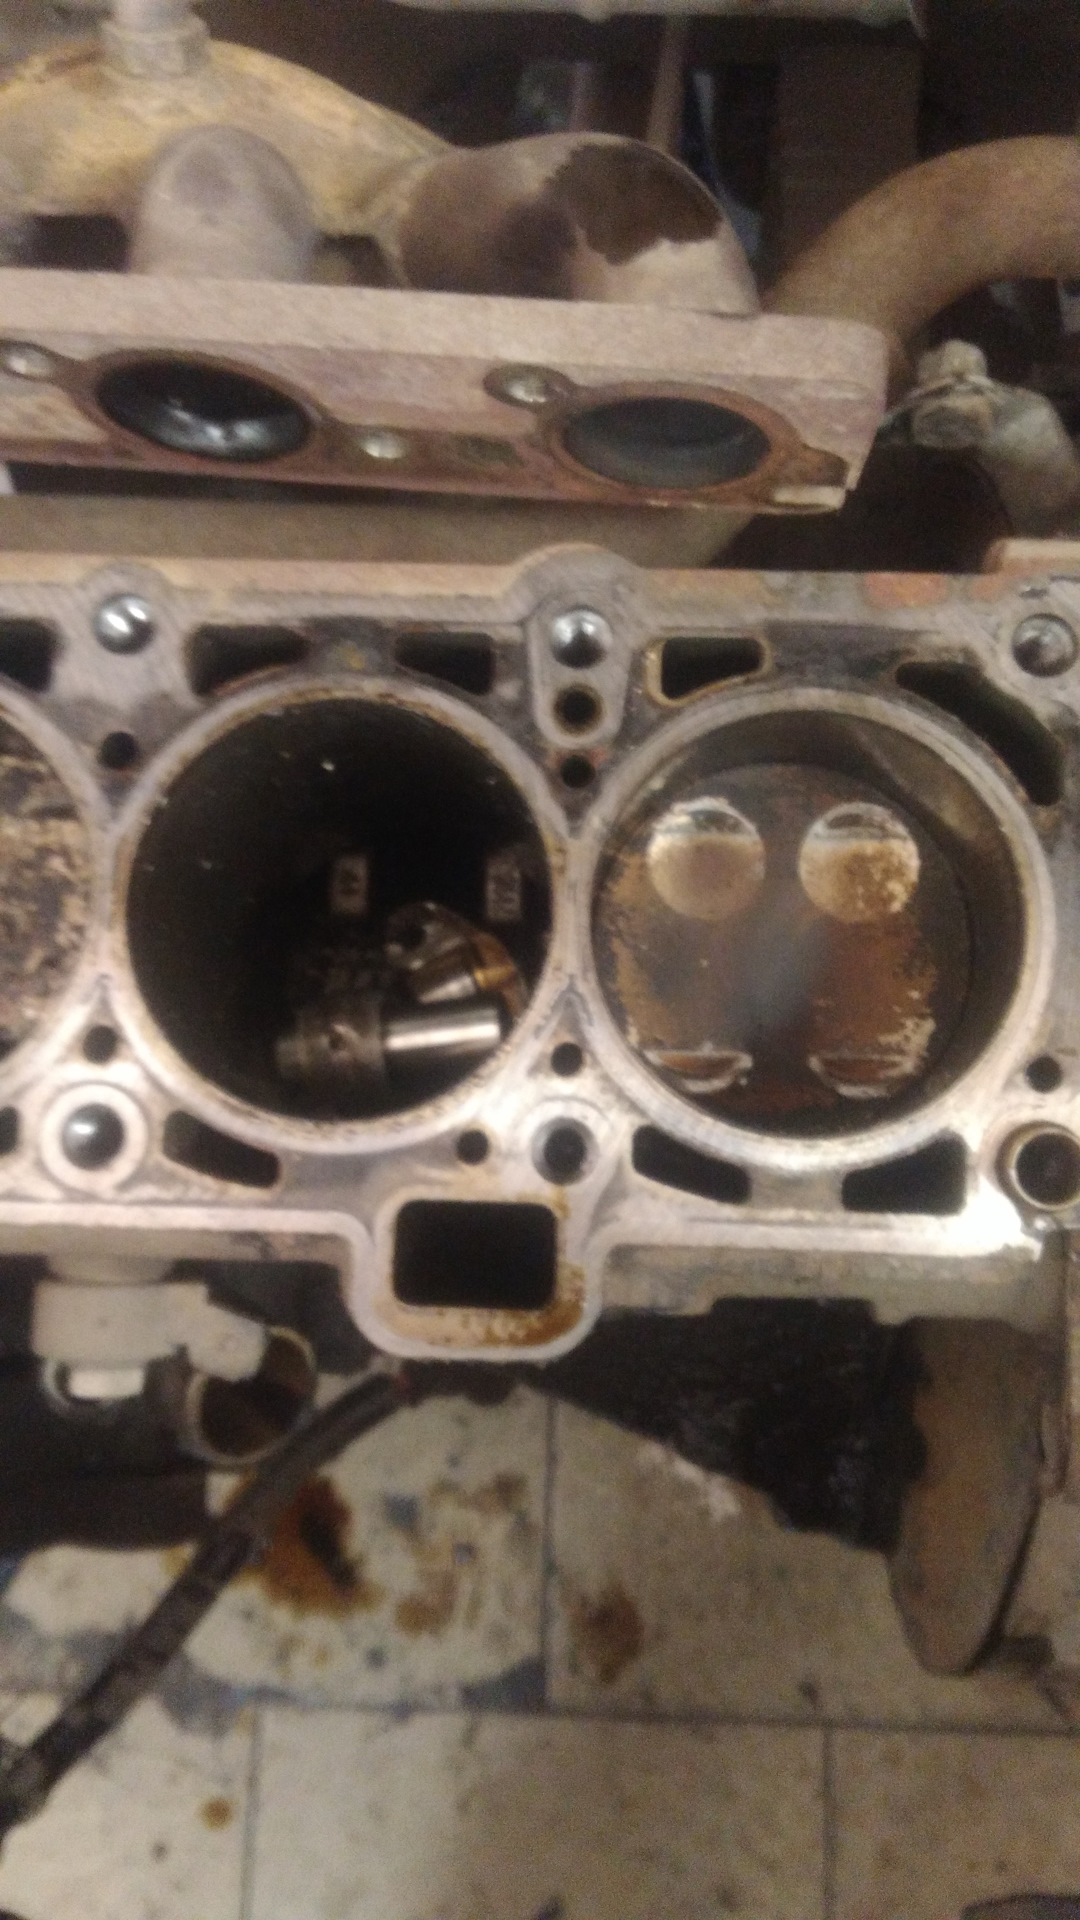 Двигатель 11186 гнет. Двигатель Гранта 8 клапанов 11186 гнет ли клапана. Погнуло клапана Гранта 8 клапанная. Загнуло клапана Приора 16 клапанов. Погнуло клапана Гранта 8 клап.